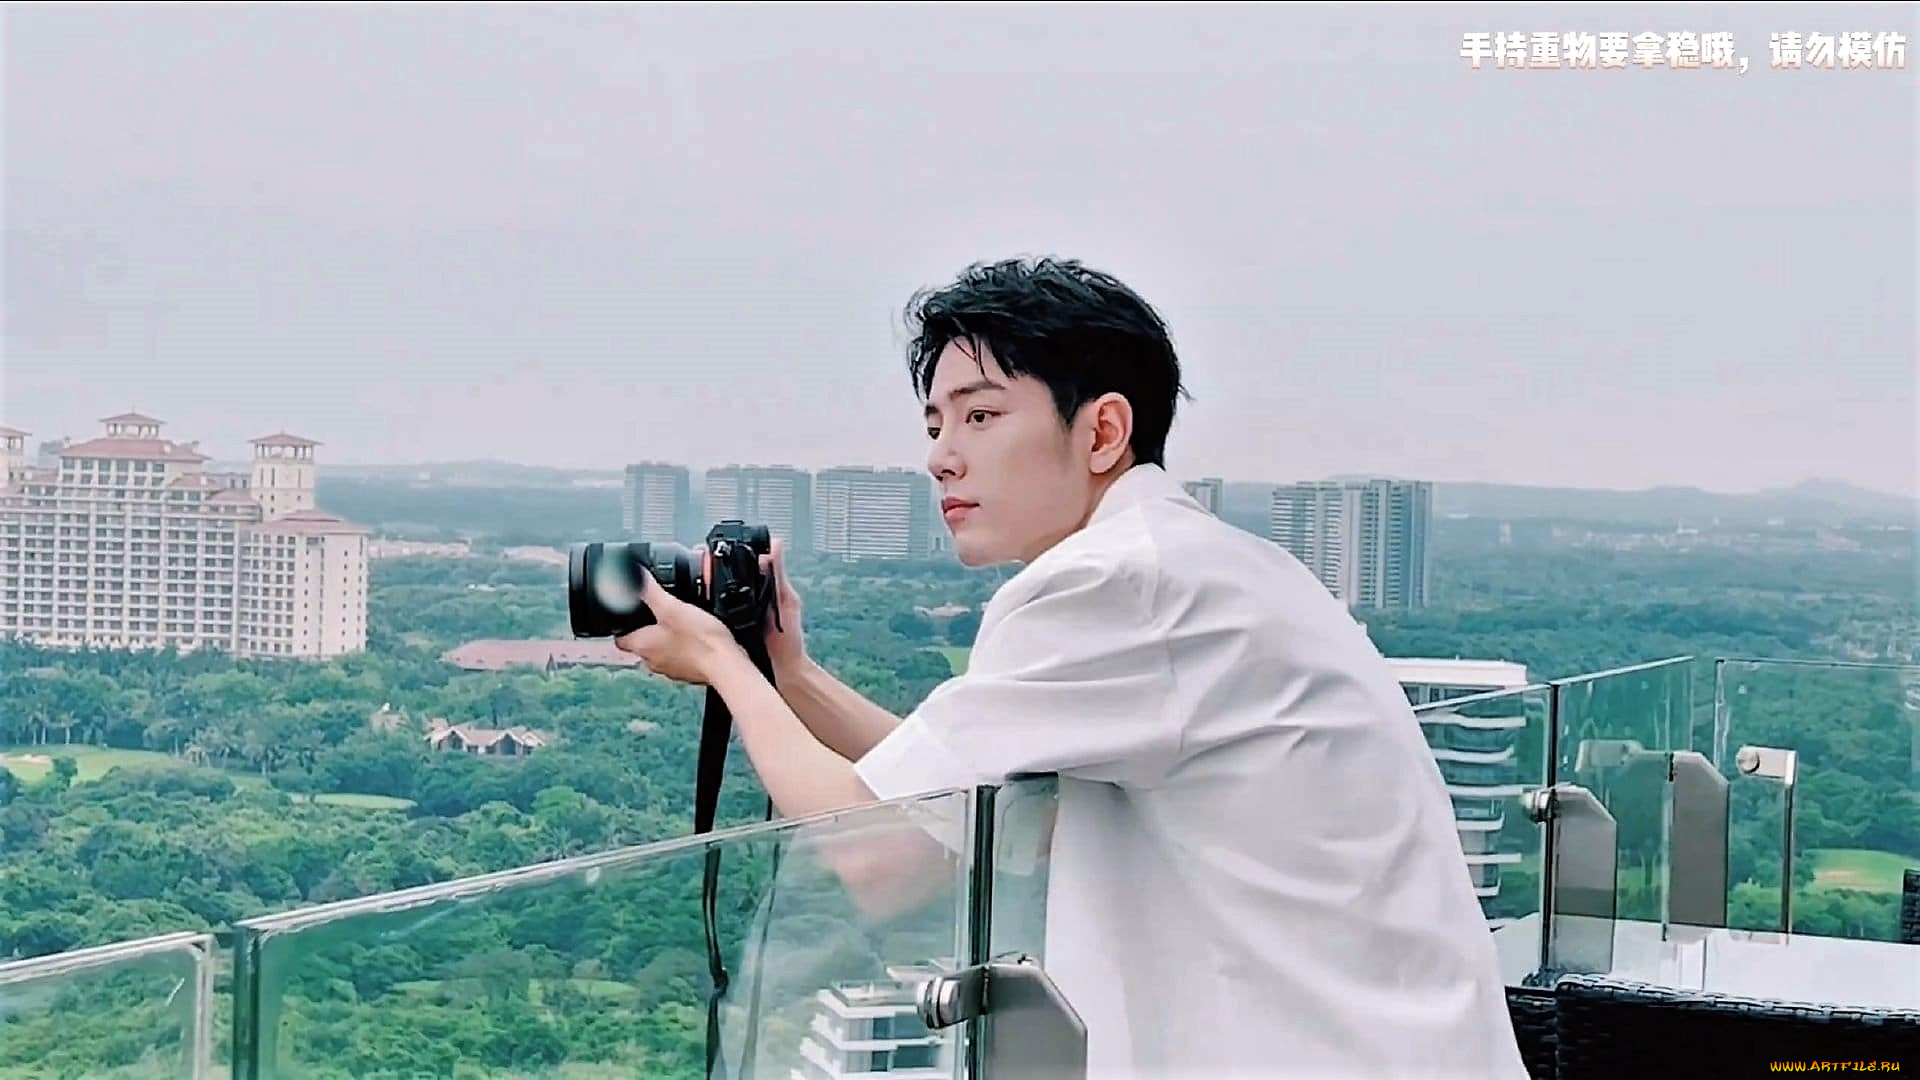 мужчины, xiao, zhan, рубашка, фотоаппарат, балкон, город, панорама